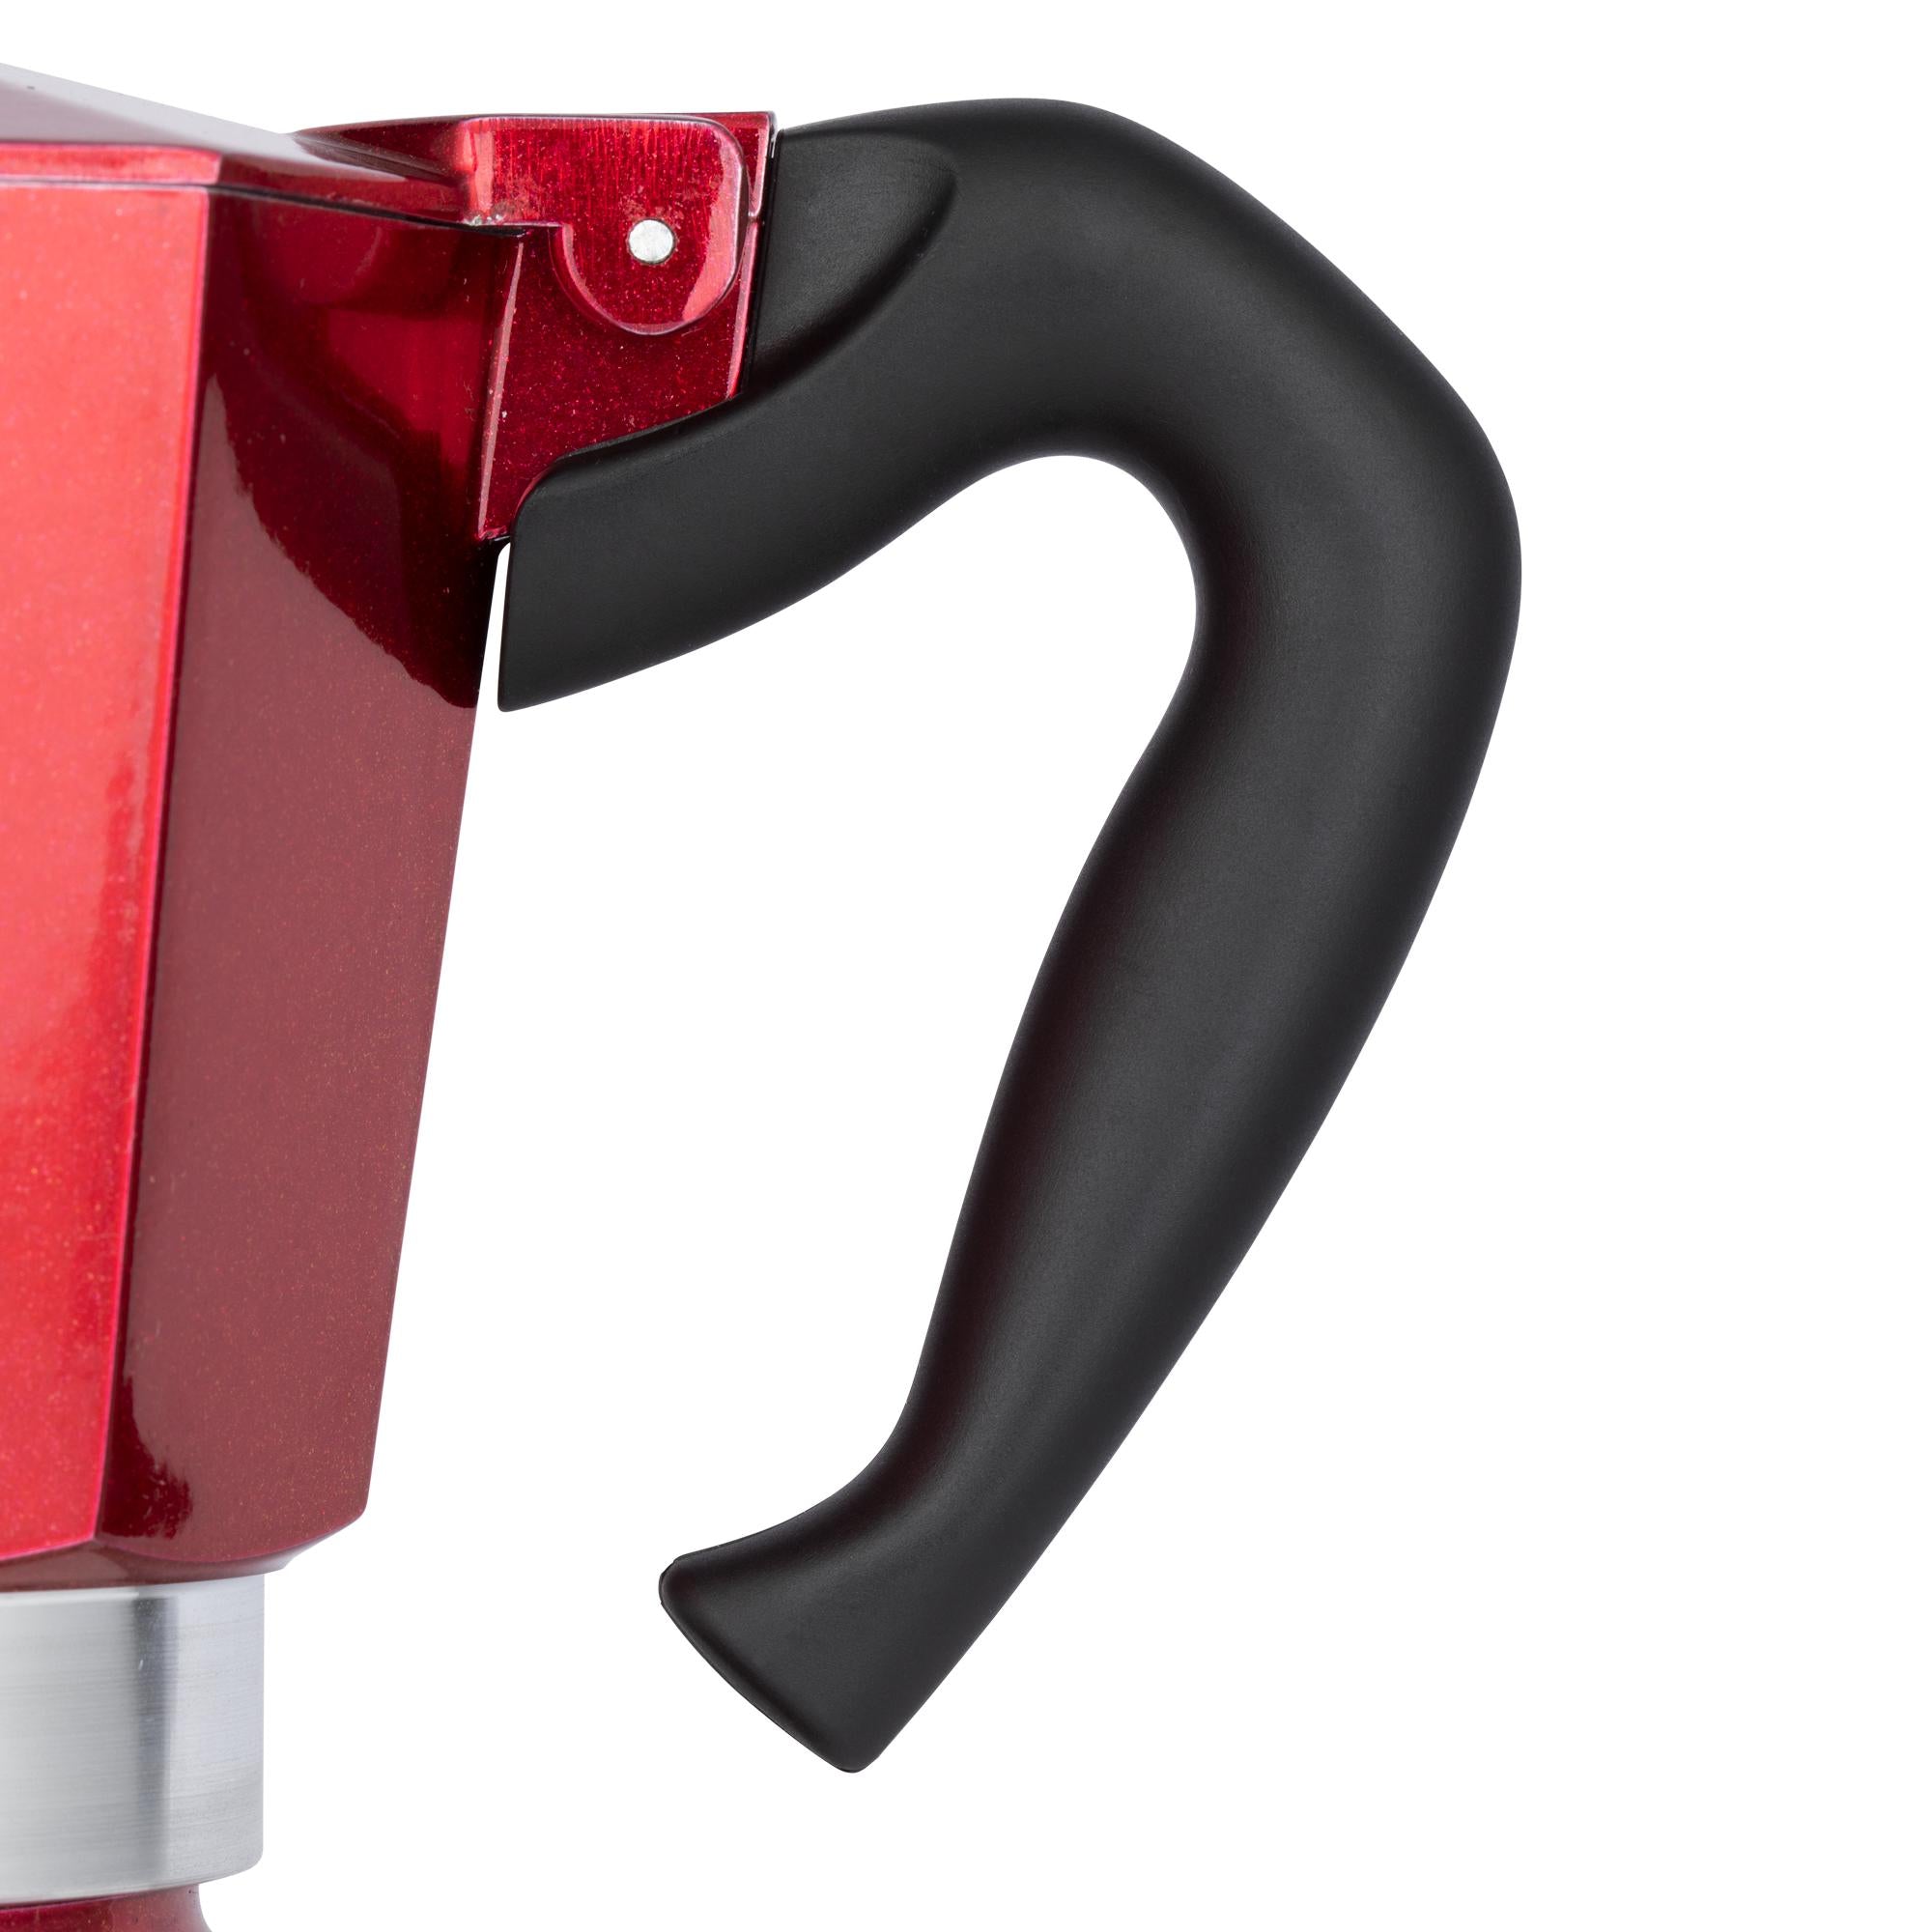 Bialetti 6 Cup Stovetop Espresso Maker Aluminum — Consiglio's